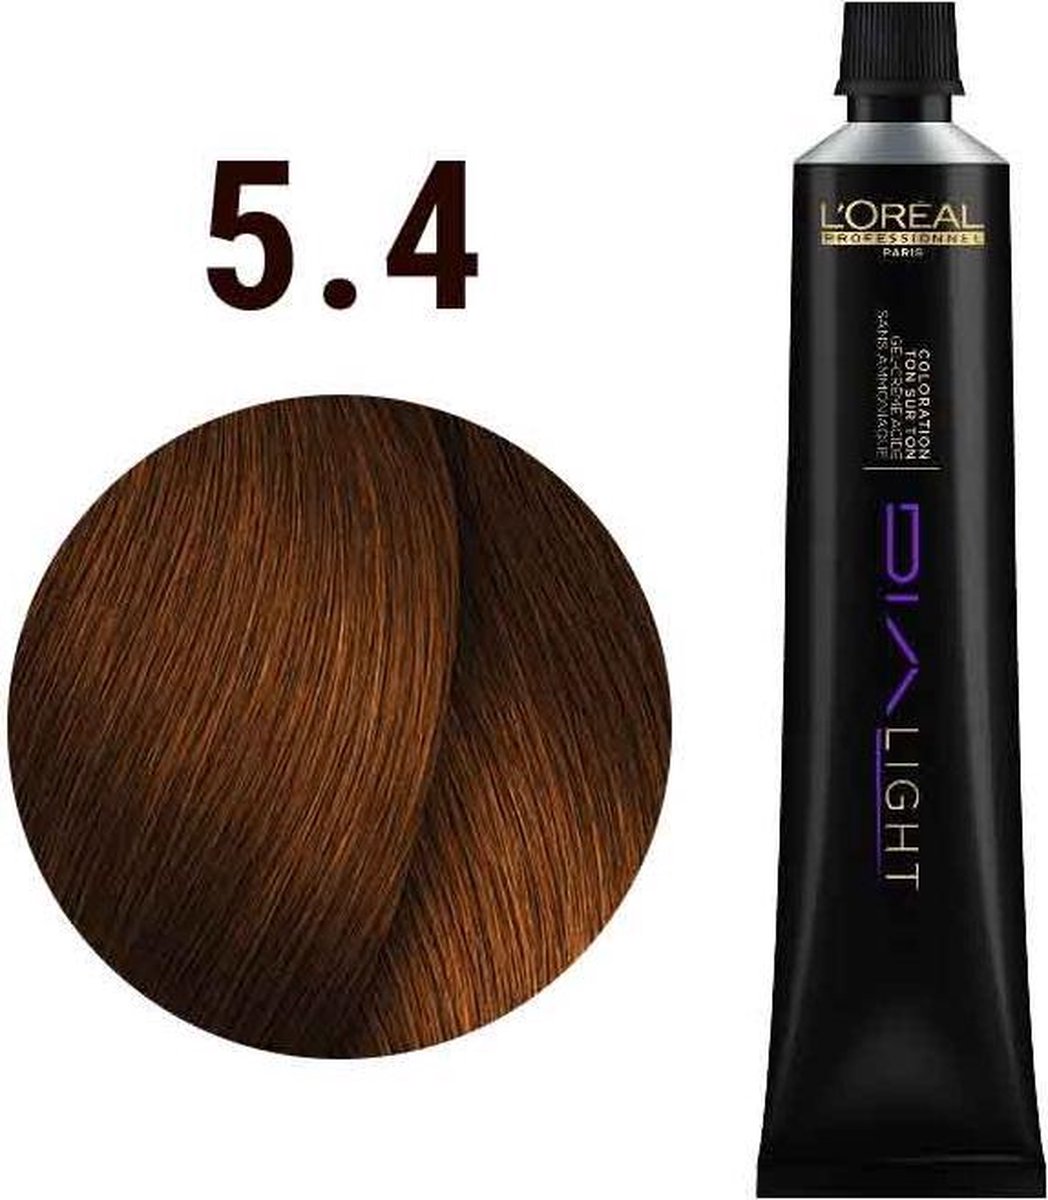 L'Oréal Paris Dia Light 5.4 couleur de cheveux Marron 50 ml | bol